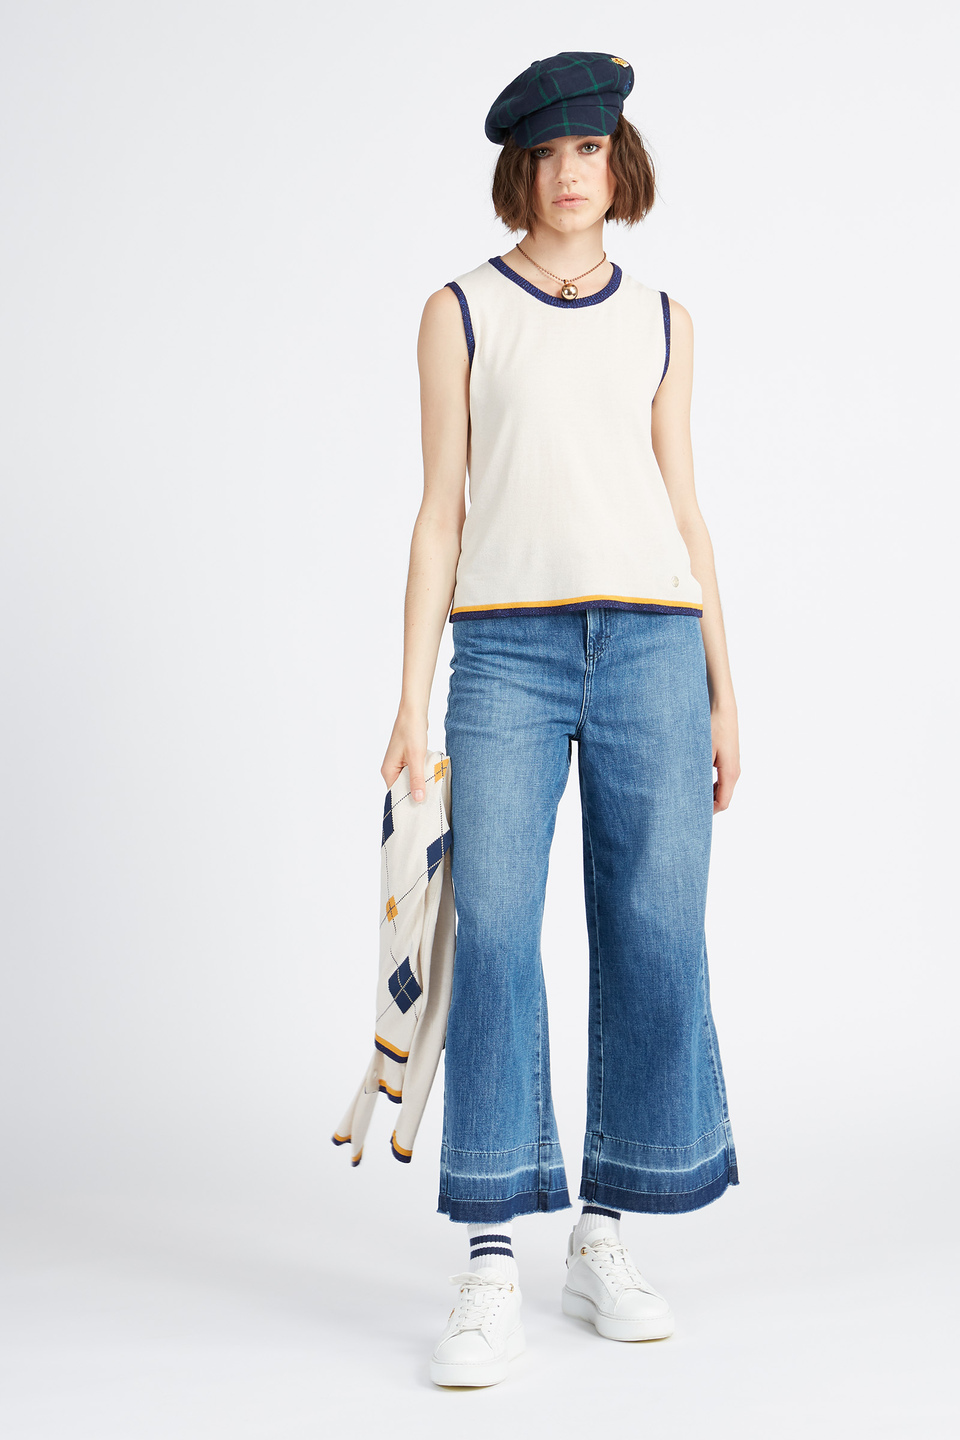 Women's denim jeans trousers 5 pockets capsule Spring Weekend - Villem | La Martina - Official Online Shop